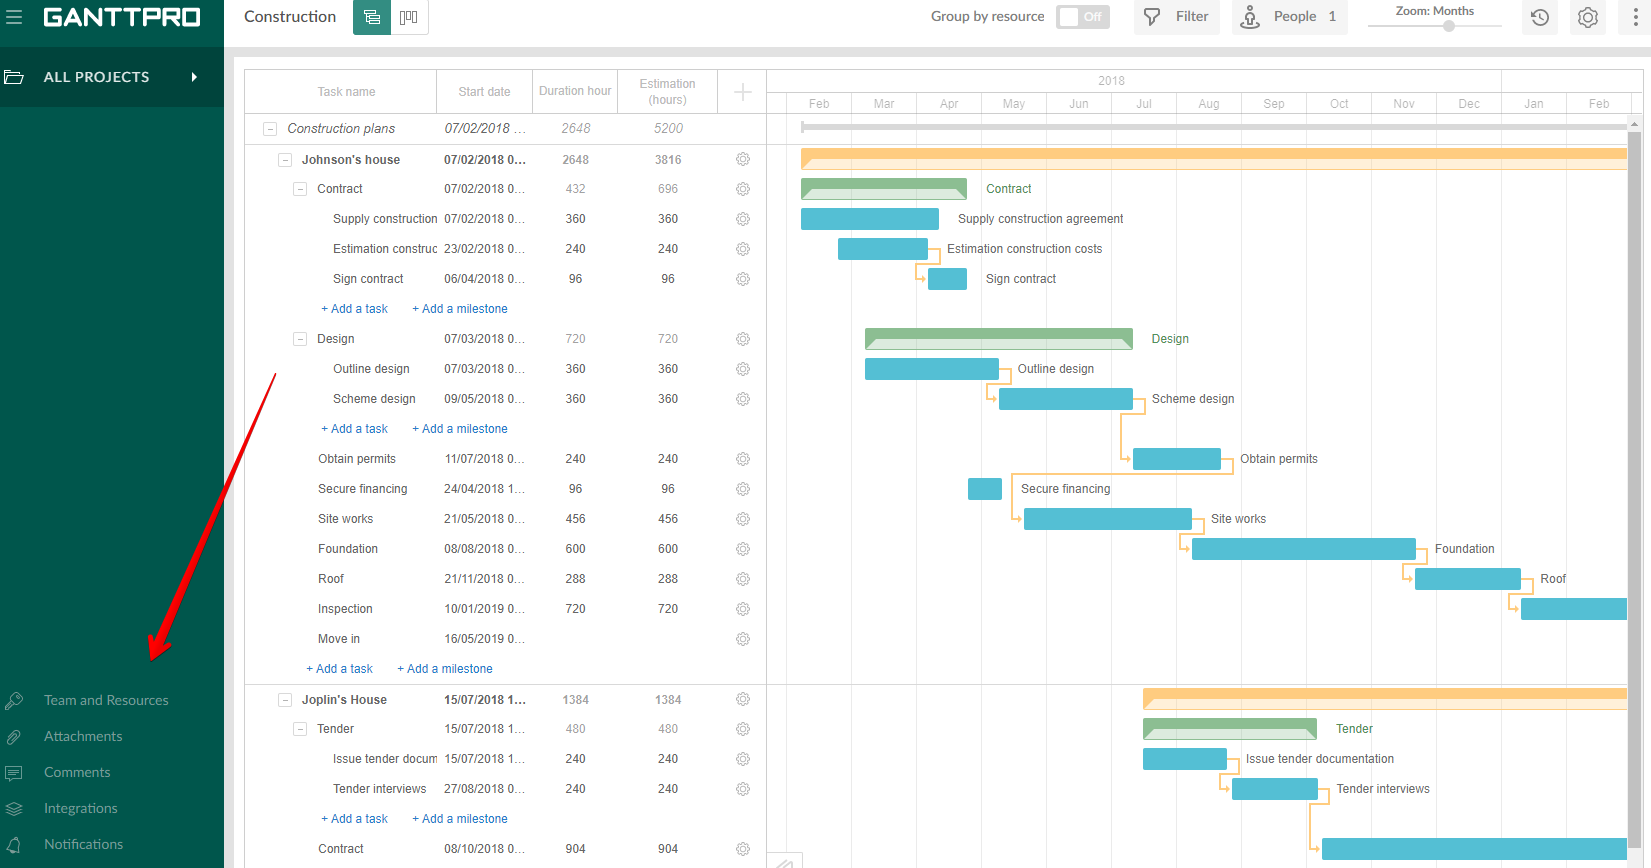 Resource management in GanttPRO Gantt chart software